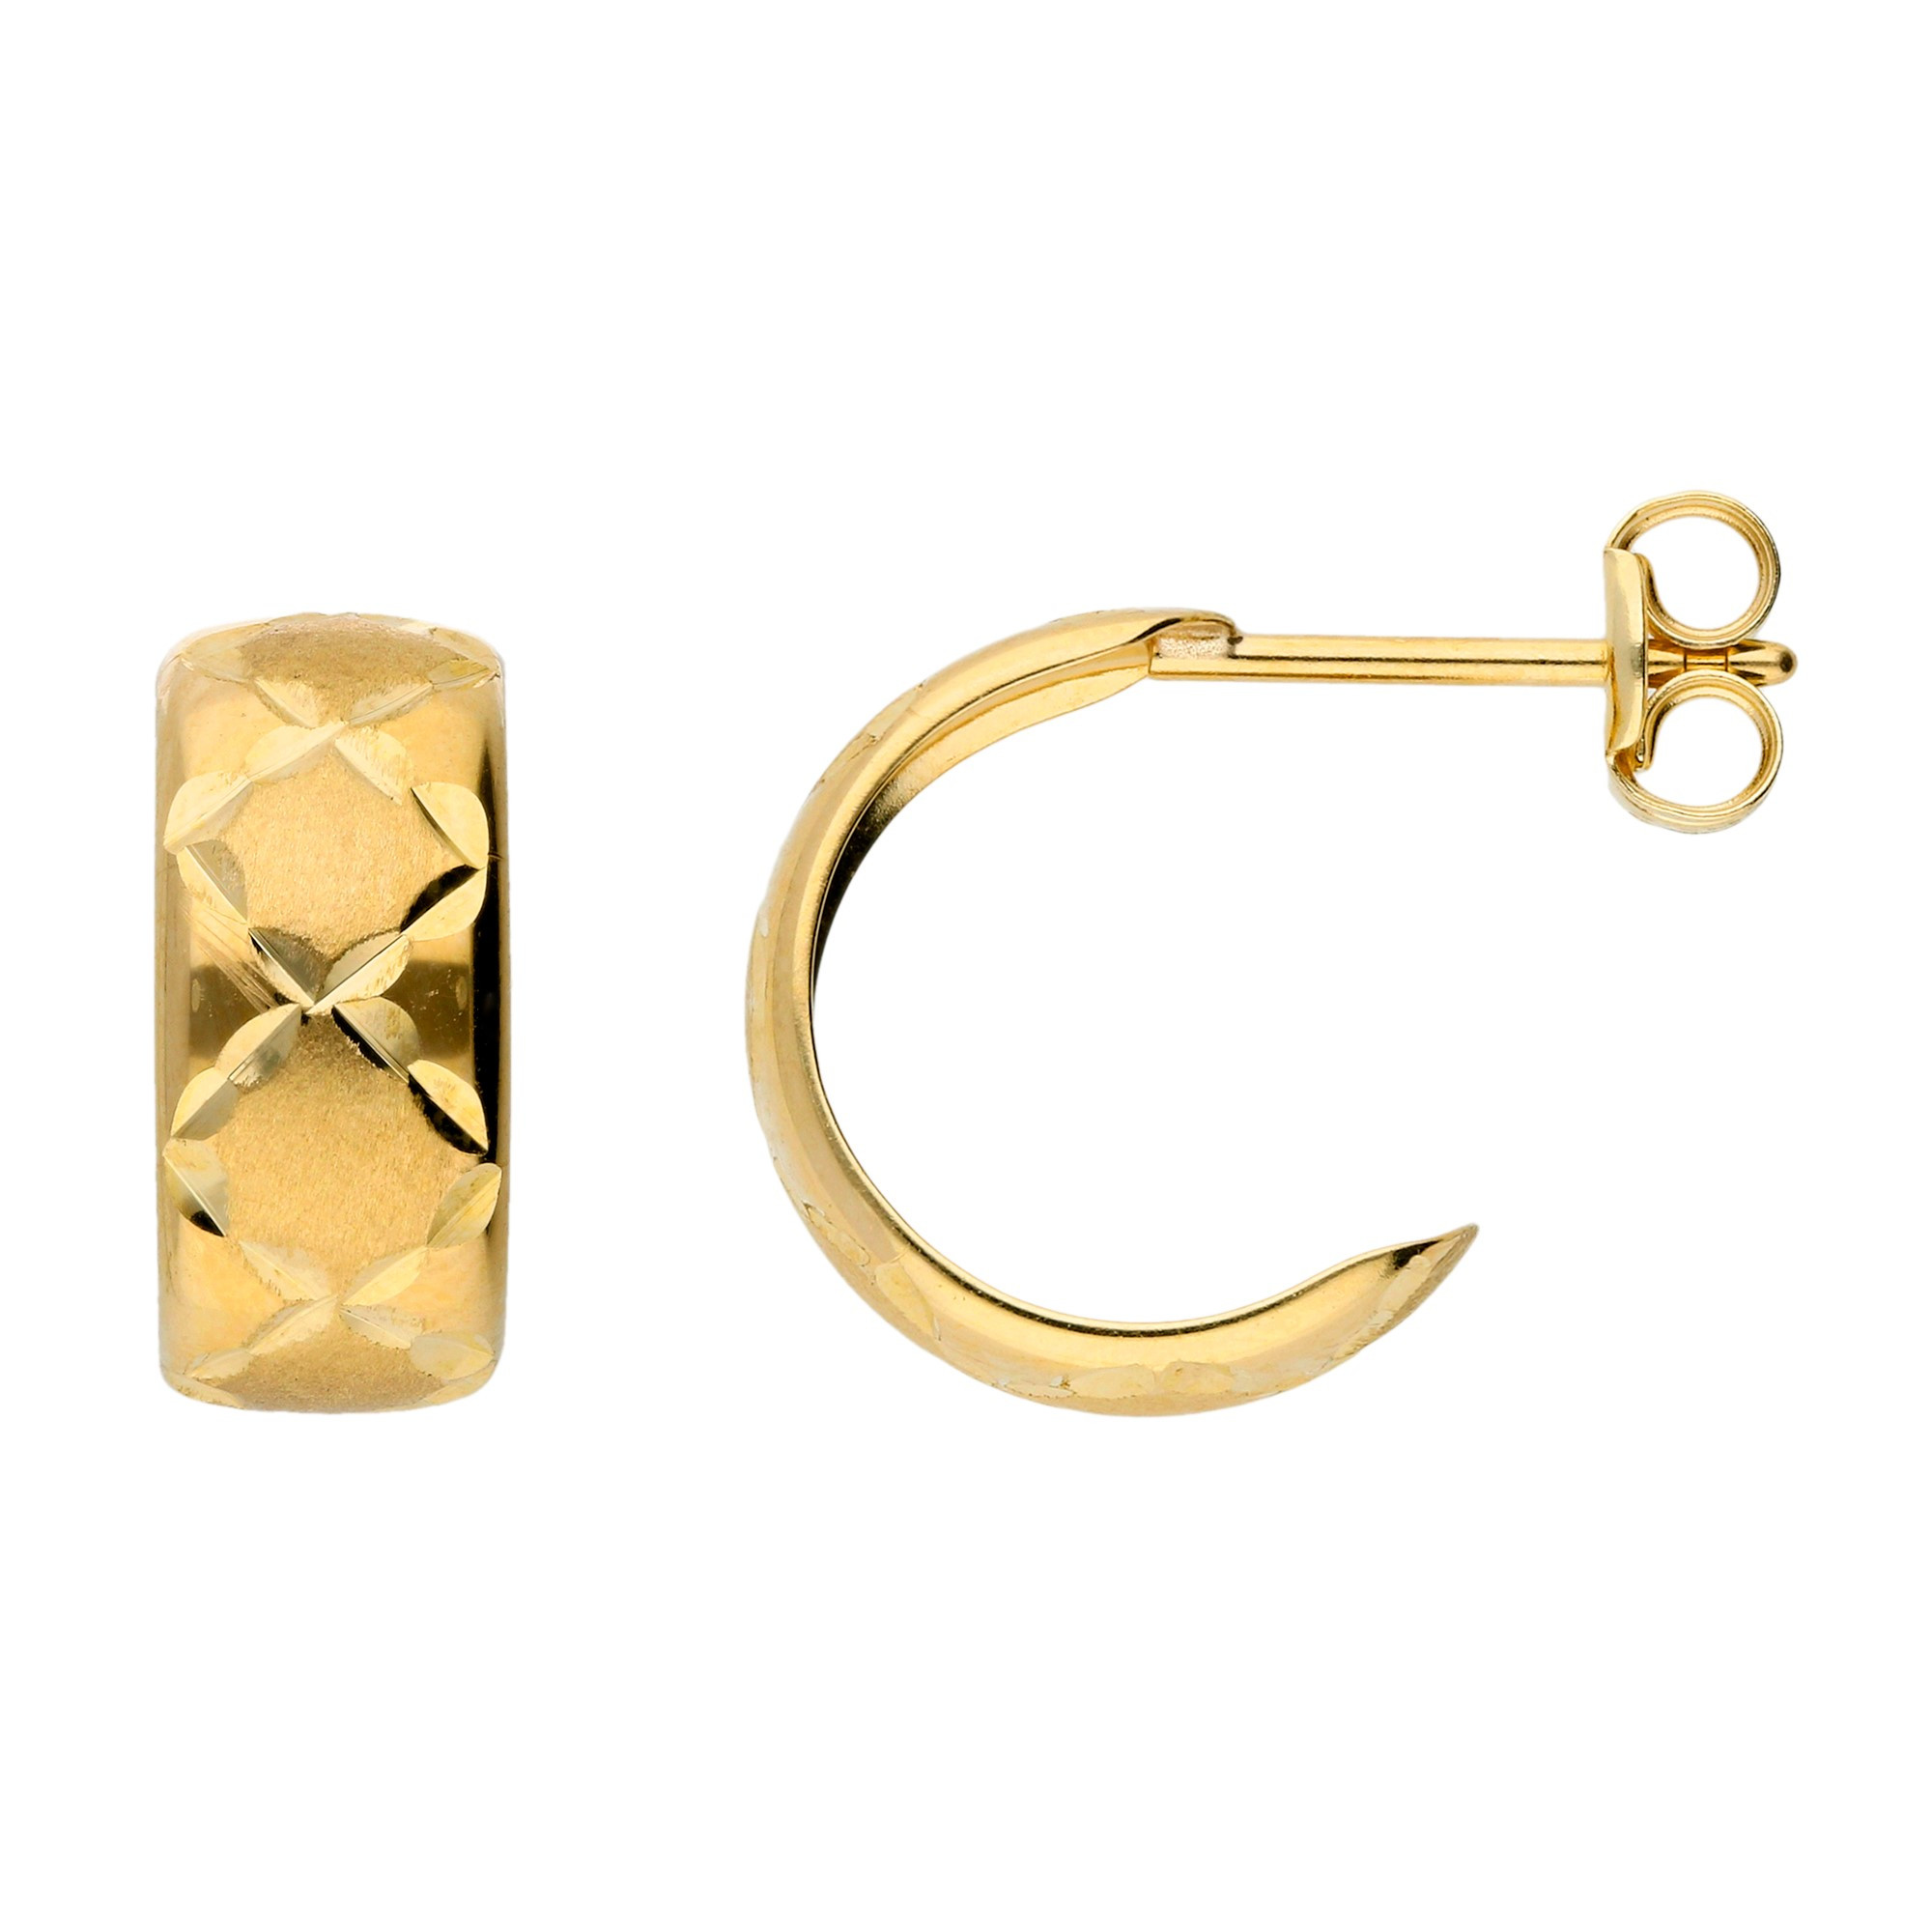 9ct Yellow Gold 12mm Diamond Cut Half Hoop Earrings | Buy Online | Free ...